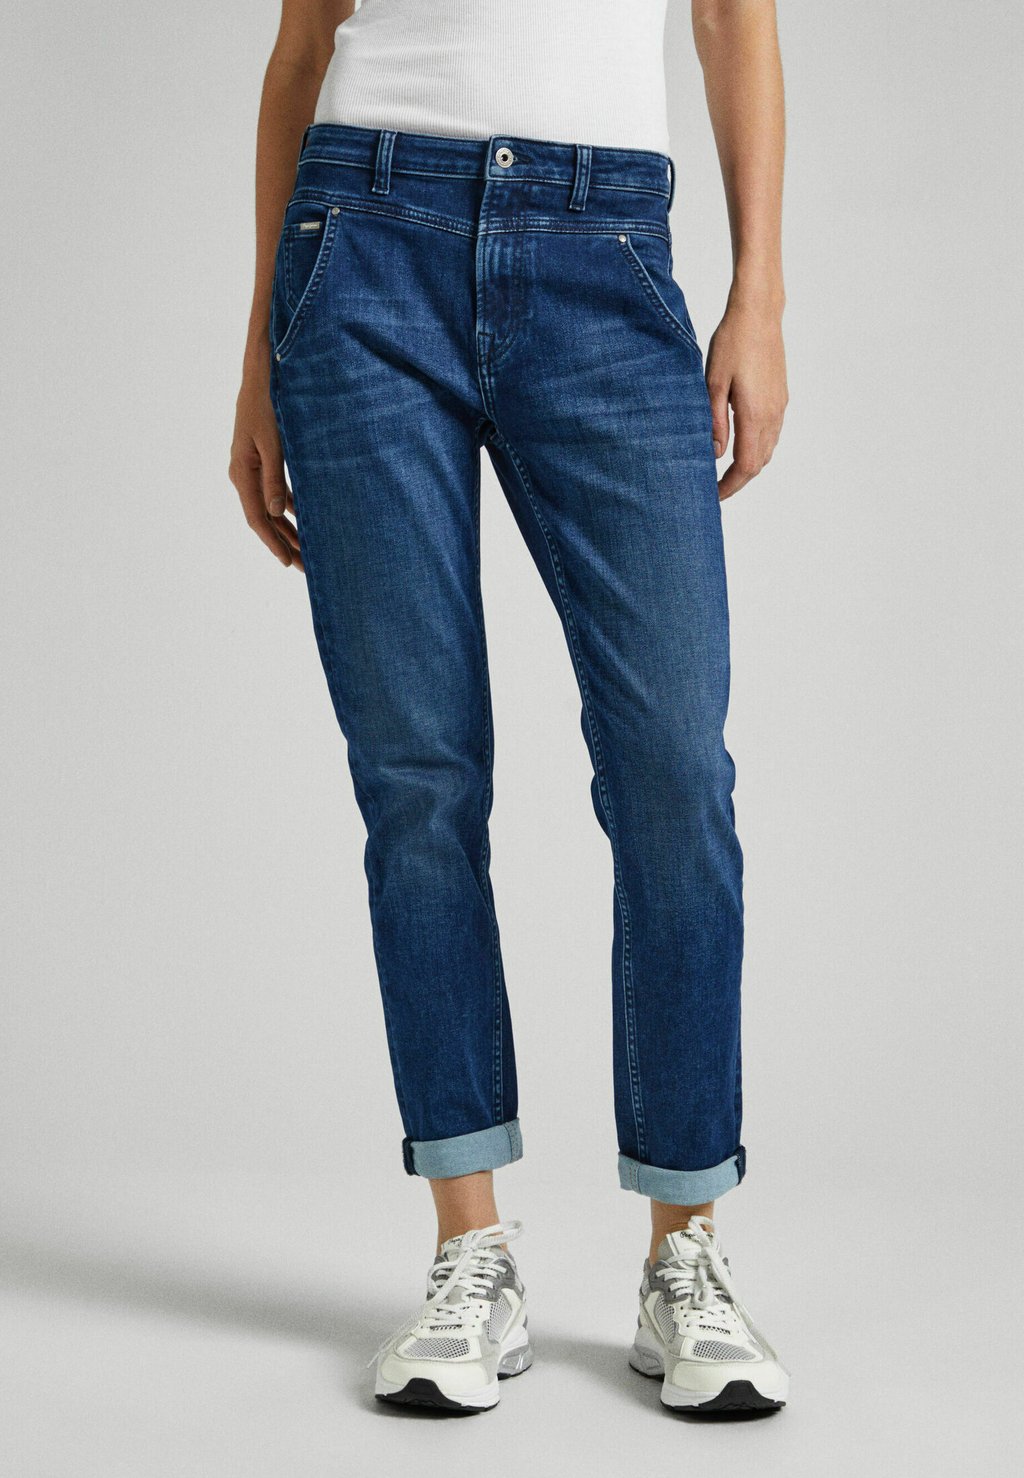 Джинсы с зауженным кроем Gymdigo Mw Pepe Jeans, цвет denim джинсы tapered fit gymdigo pepe jeans цвет denim